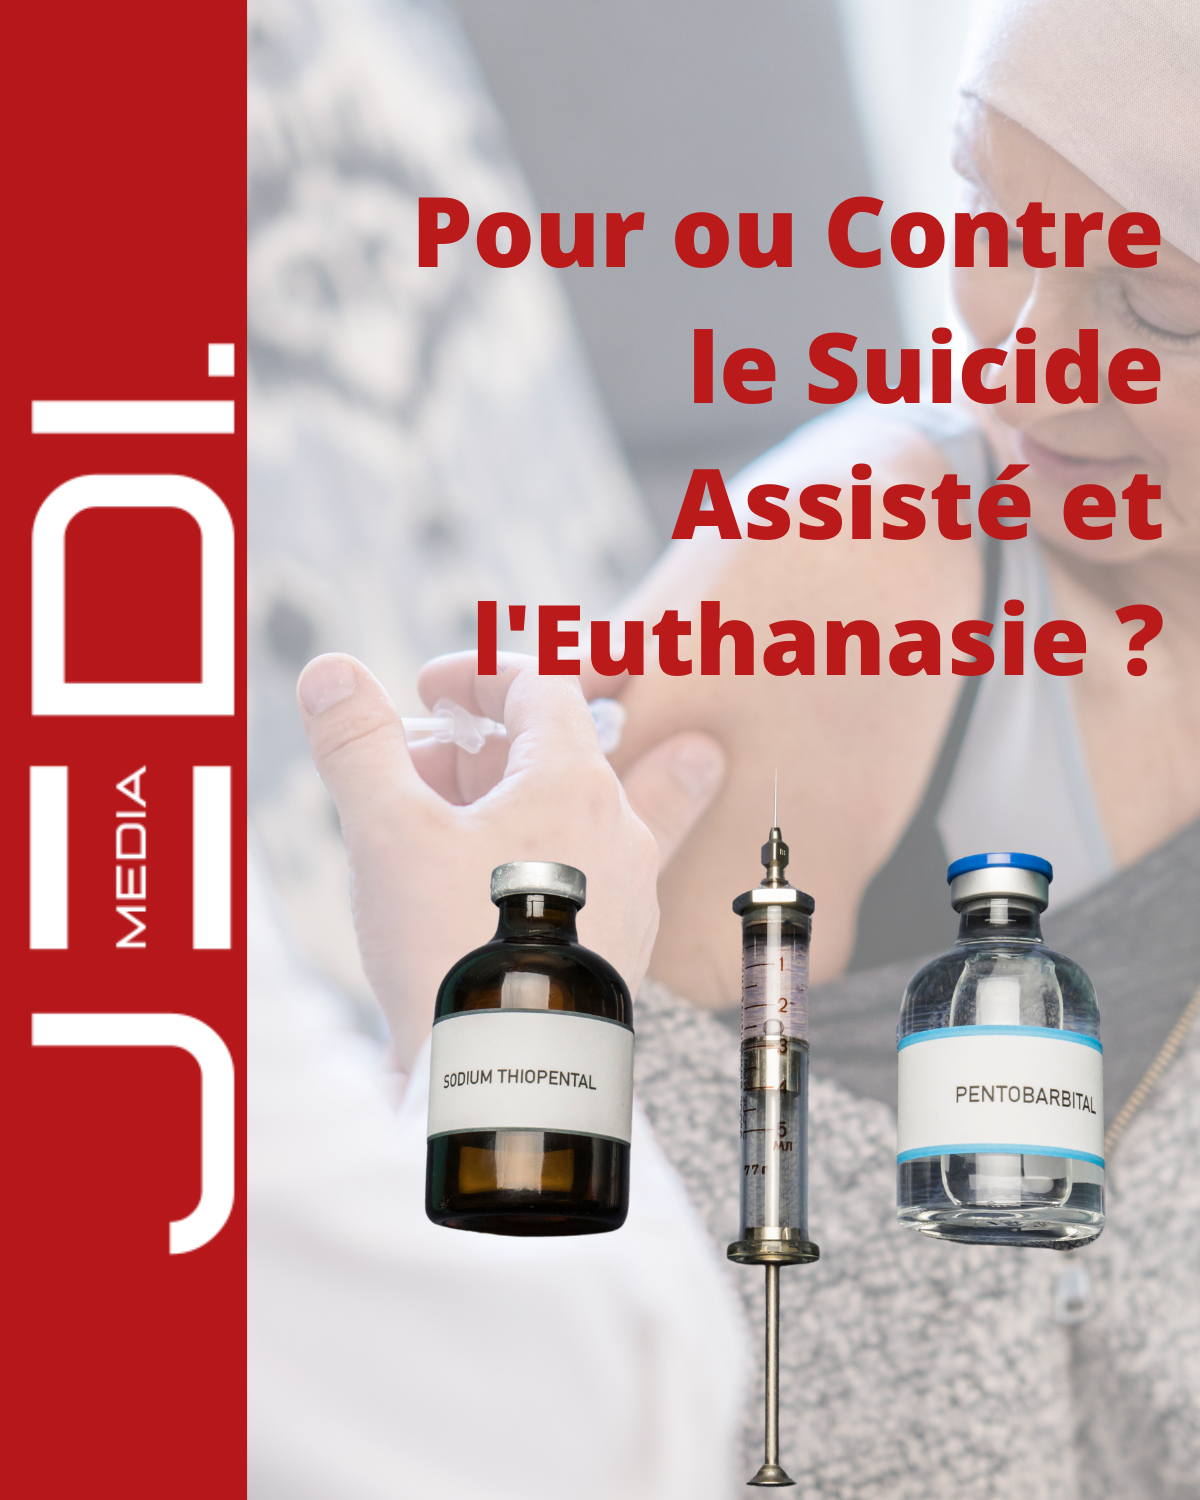 Pour ou contre le suicide assisté et l'euthanasie